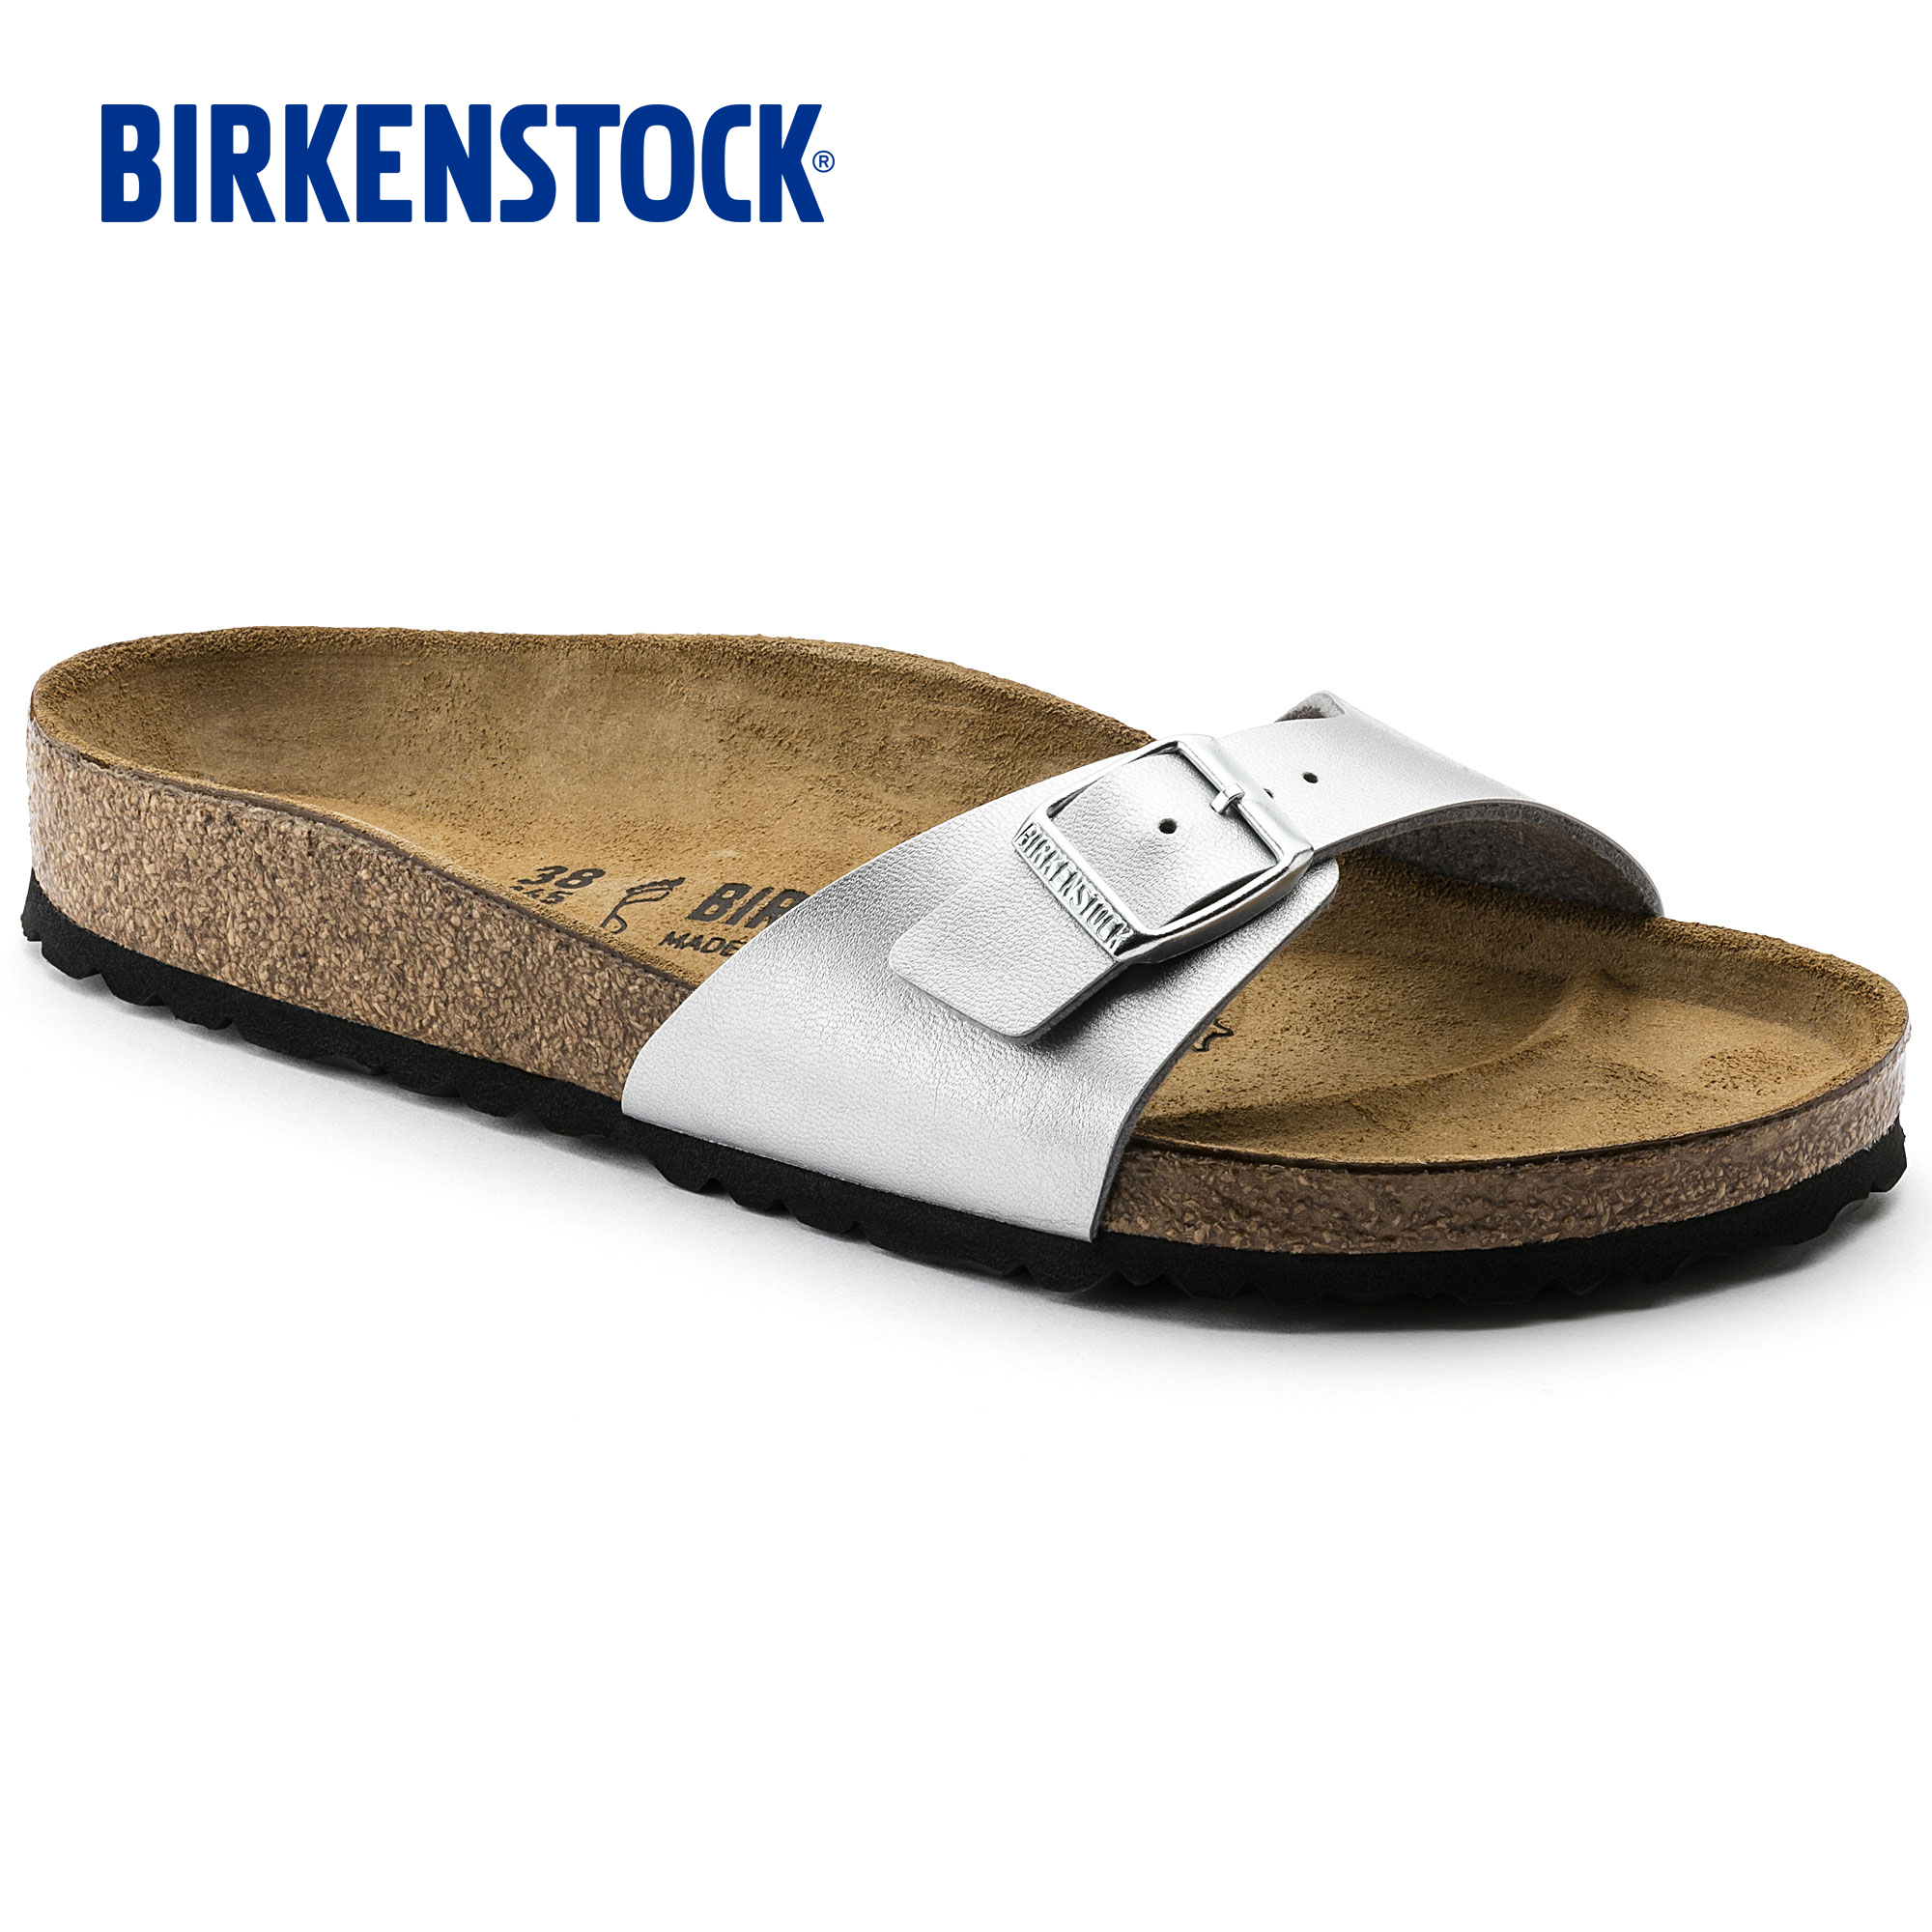 birkenstock sandals original price